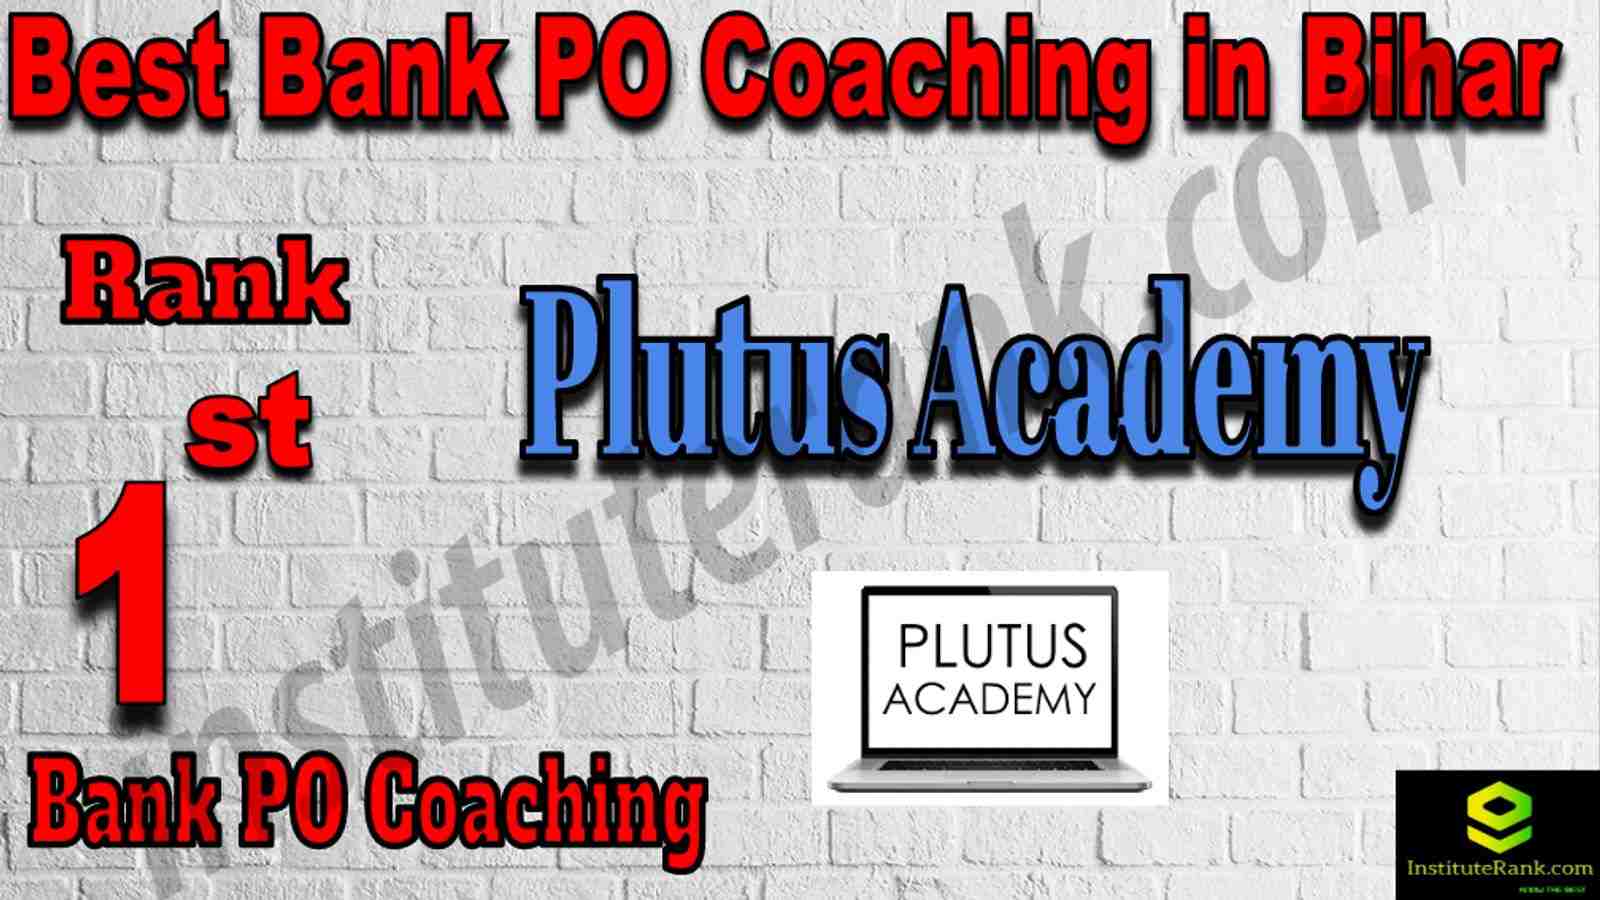 1st Best Bank PO Coaching in Bihar